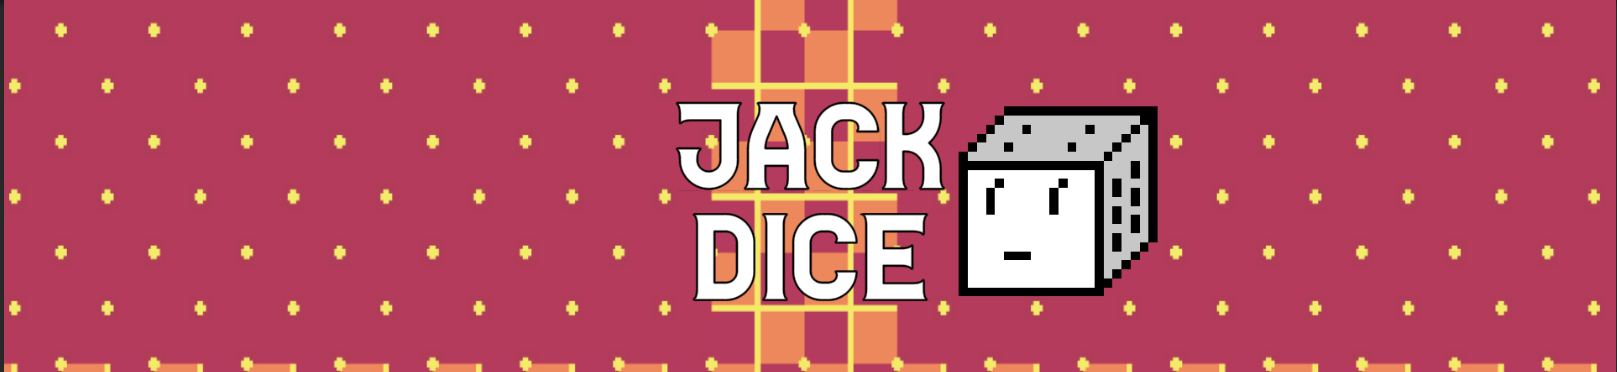 Jack Dice